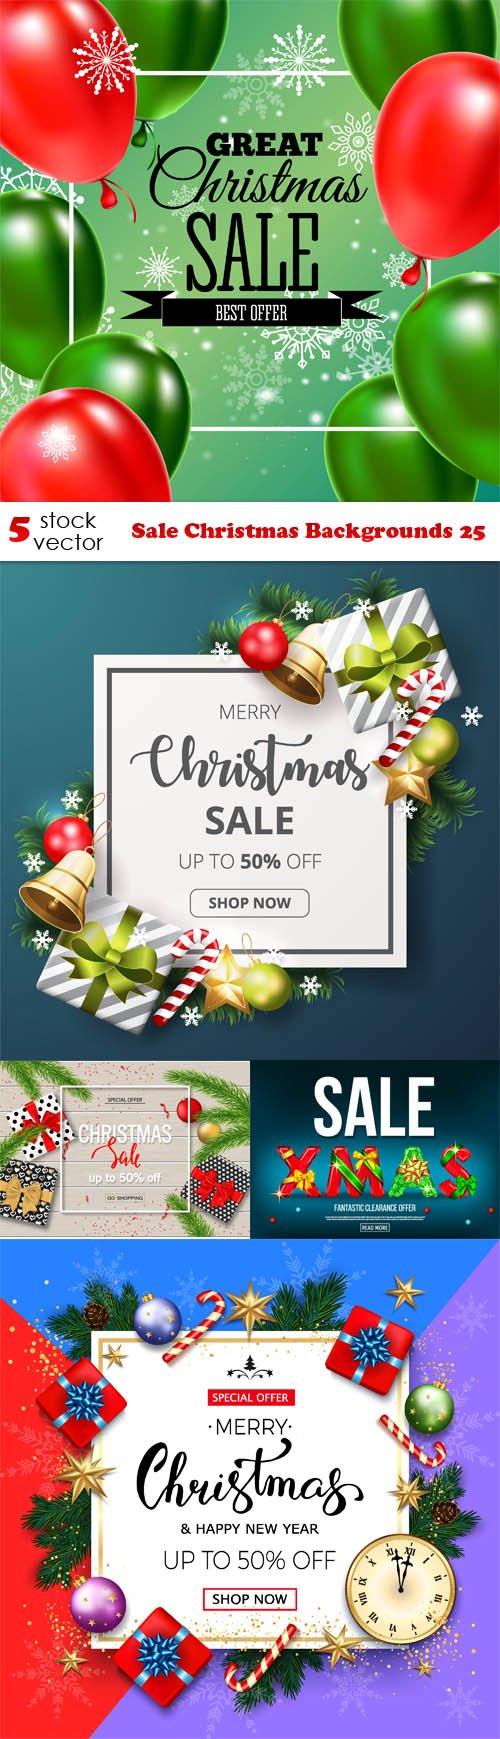 Vectors - Sale Christmas Backgrounds 25